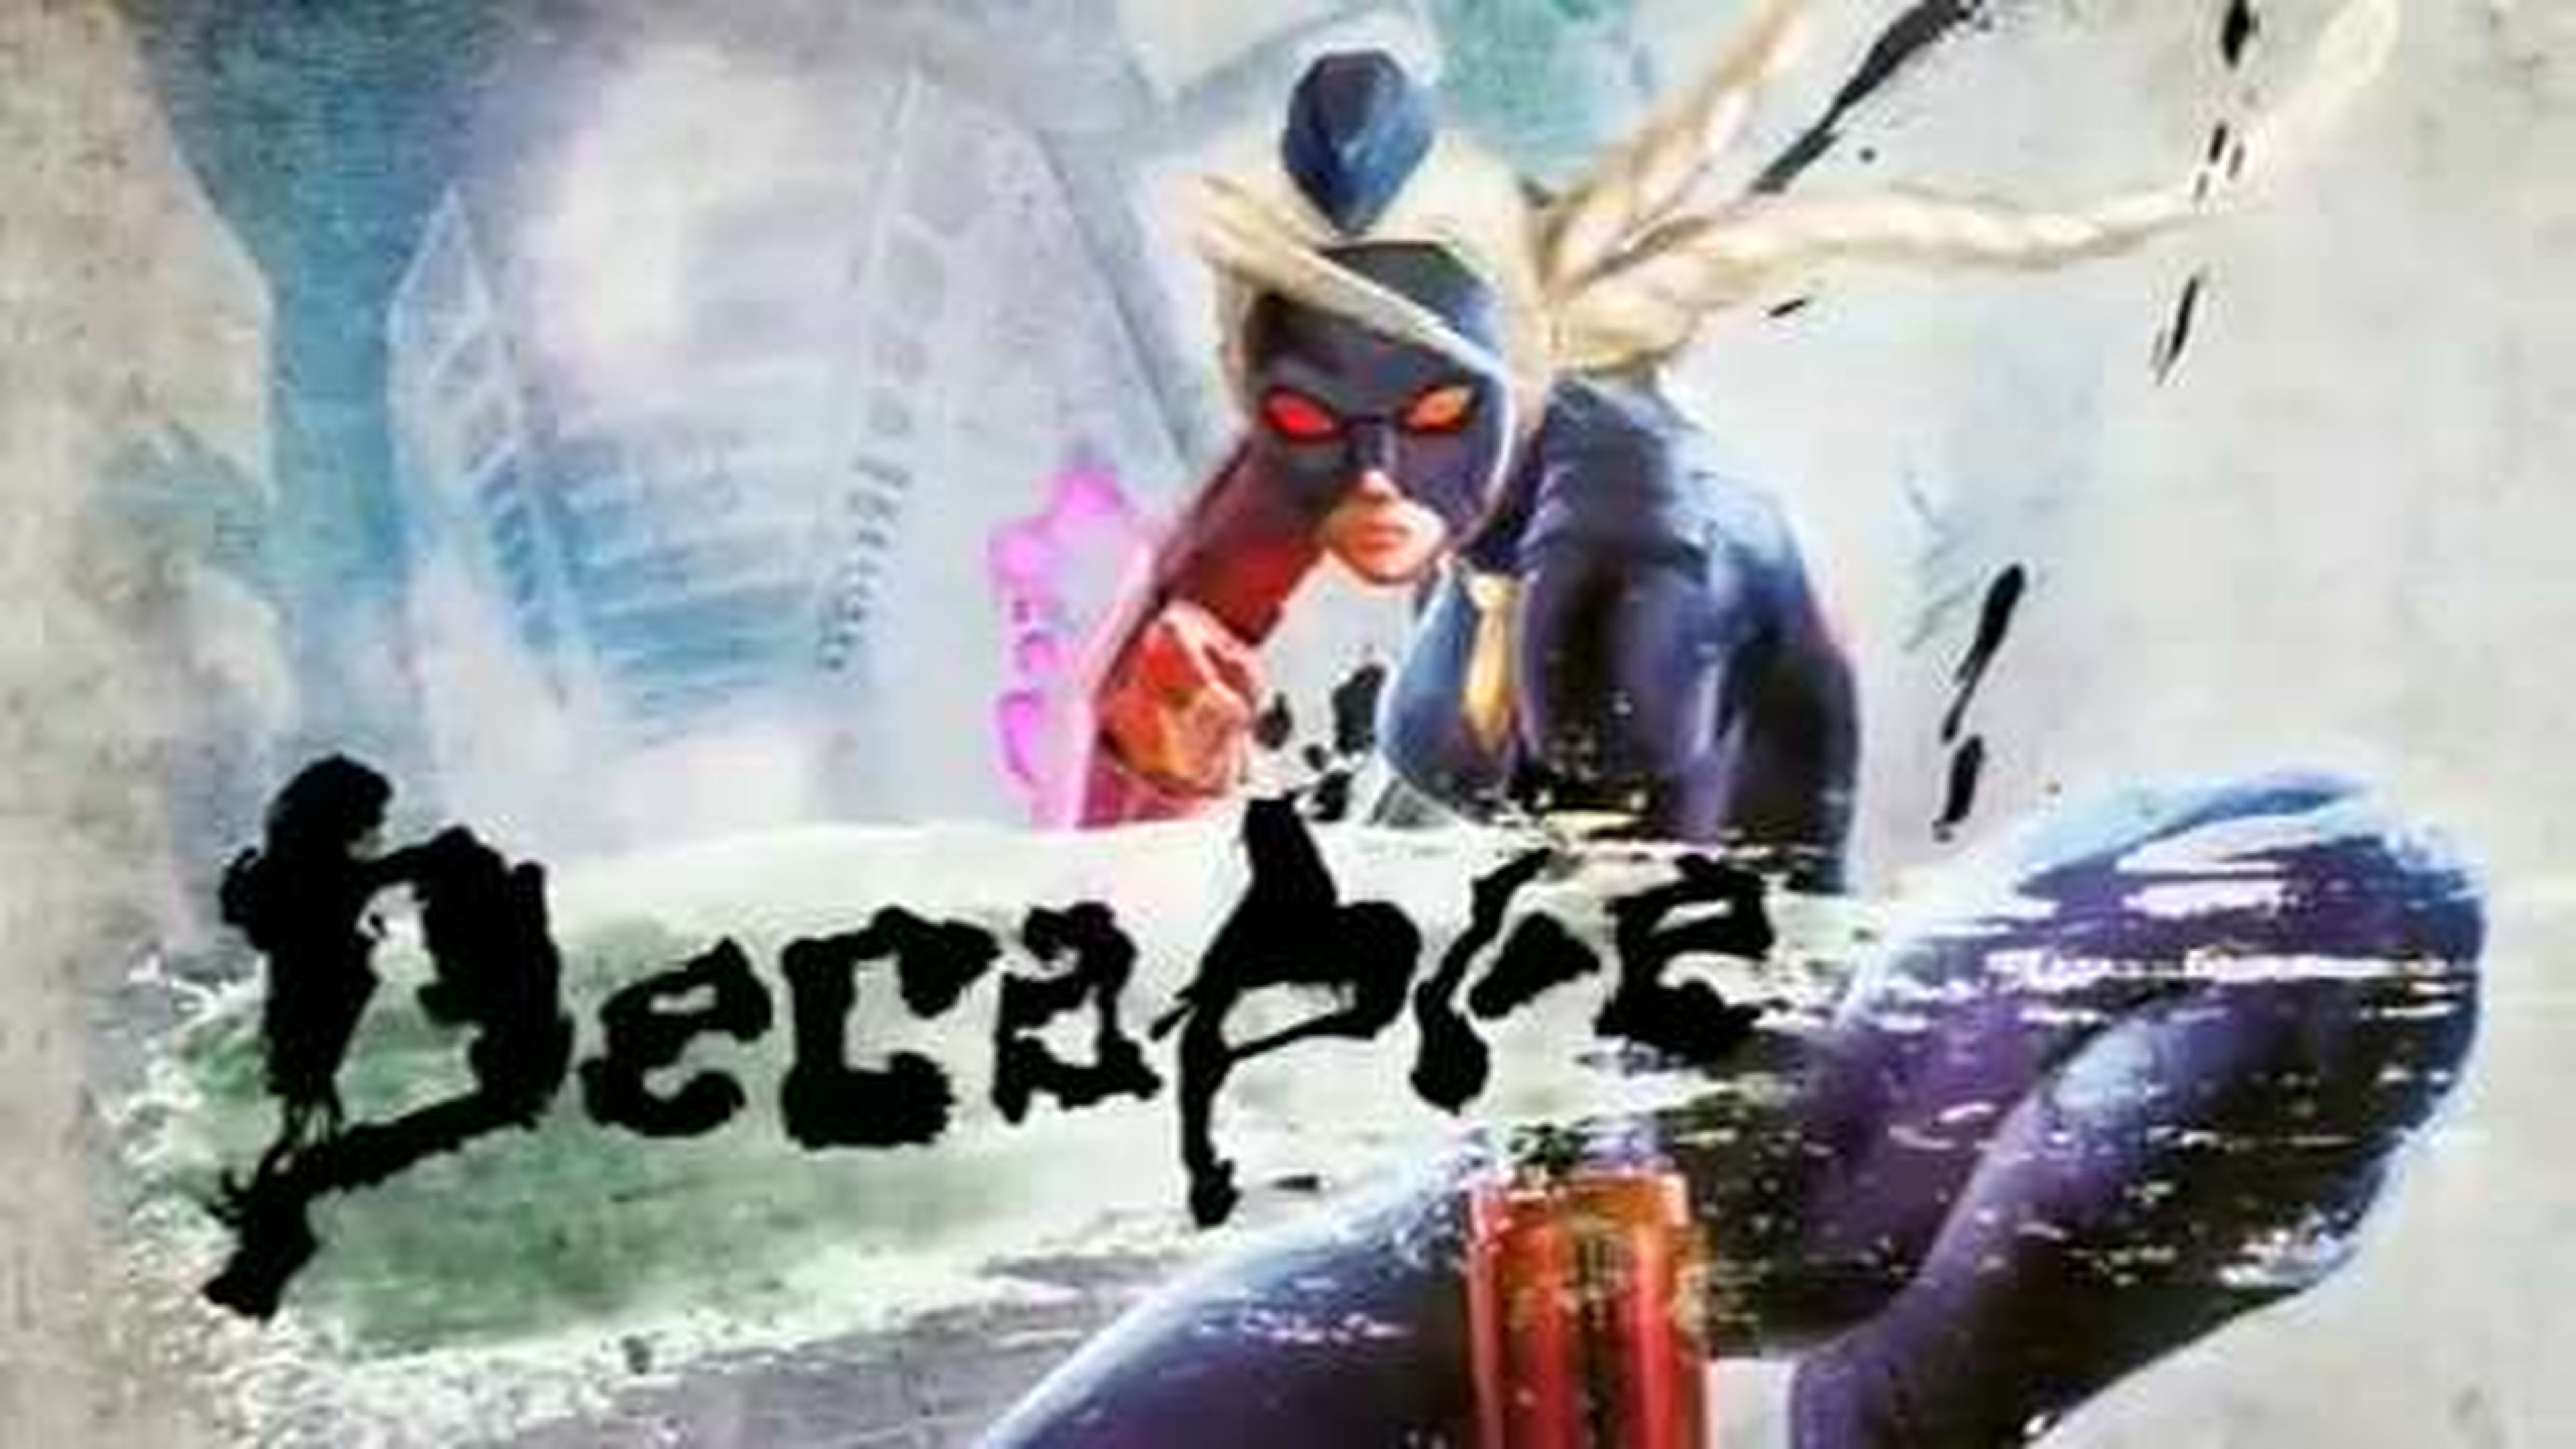 Primer tráiler de Decapre, el quinto personaje nuevo de Ultra Street Fighter IV, en HobbyConsolas.com